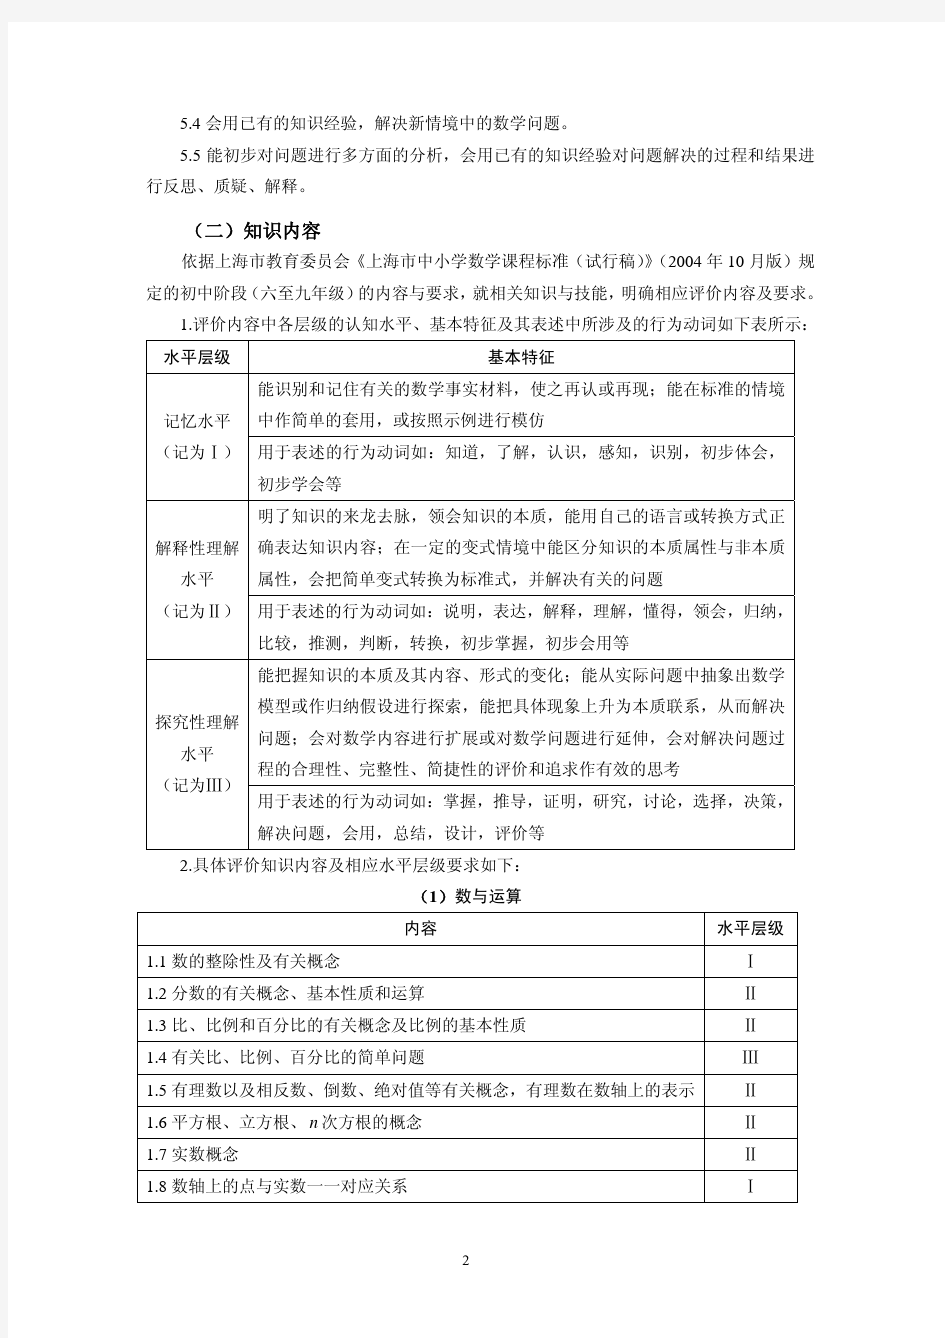 2016年上海市初中数学考试大纲